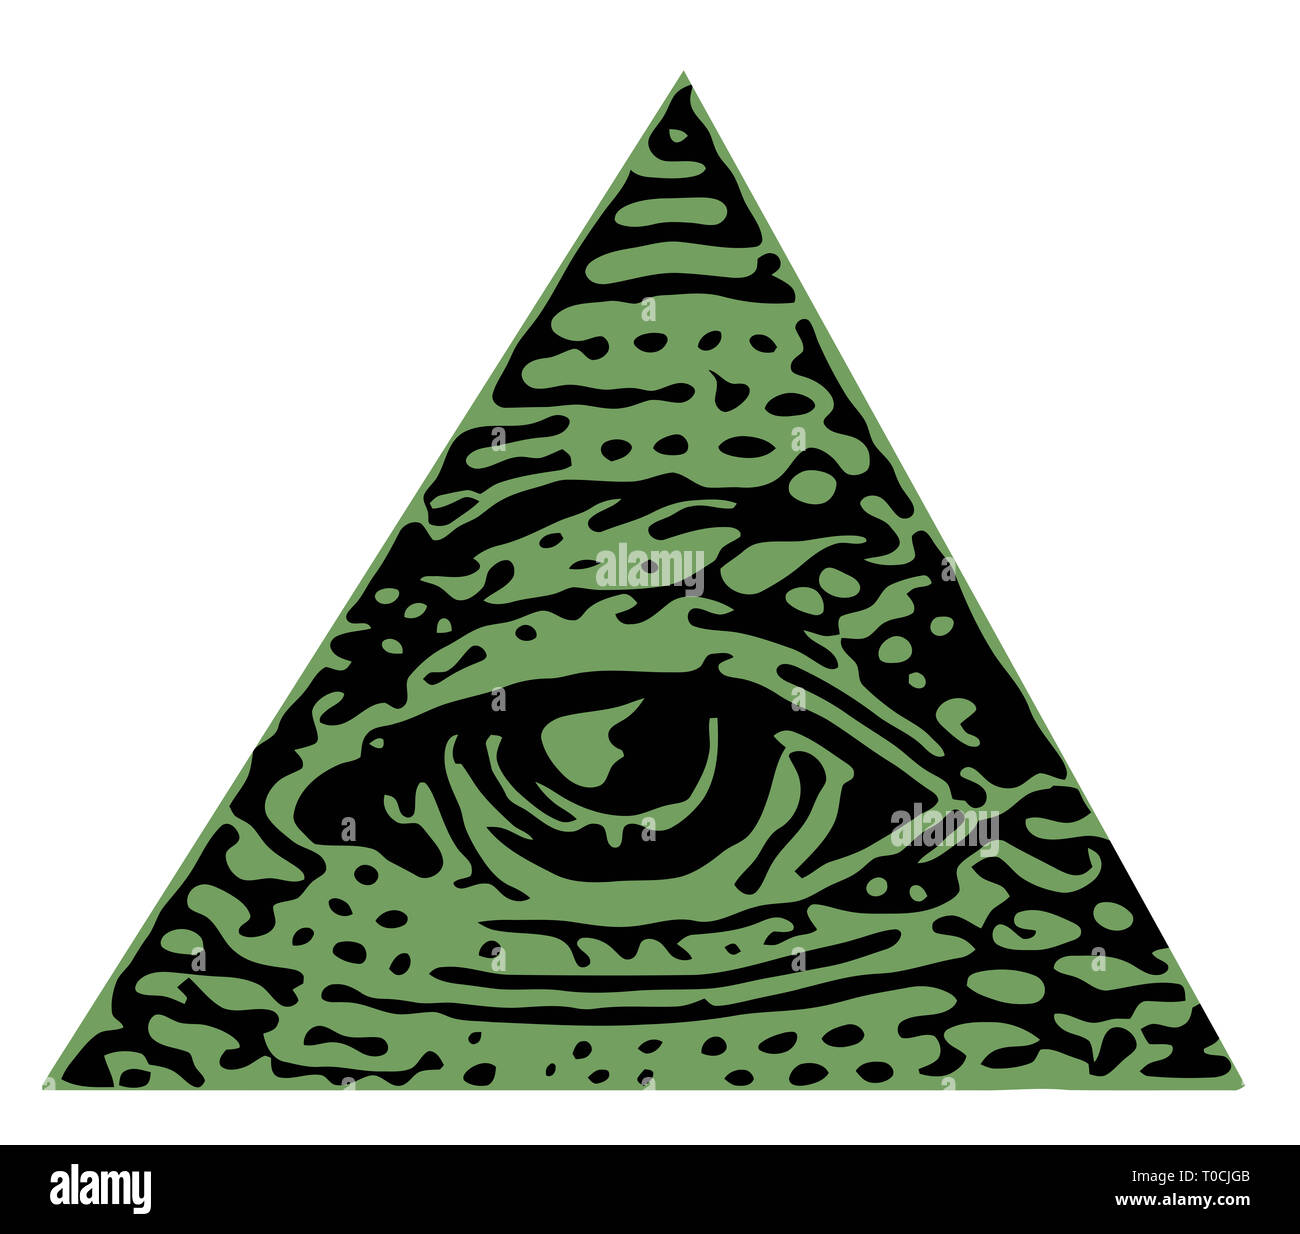 Occhio della provvidenza illuminati massoneria illustrazione del triangolo  Foto stock - Alamy